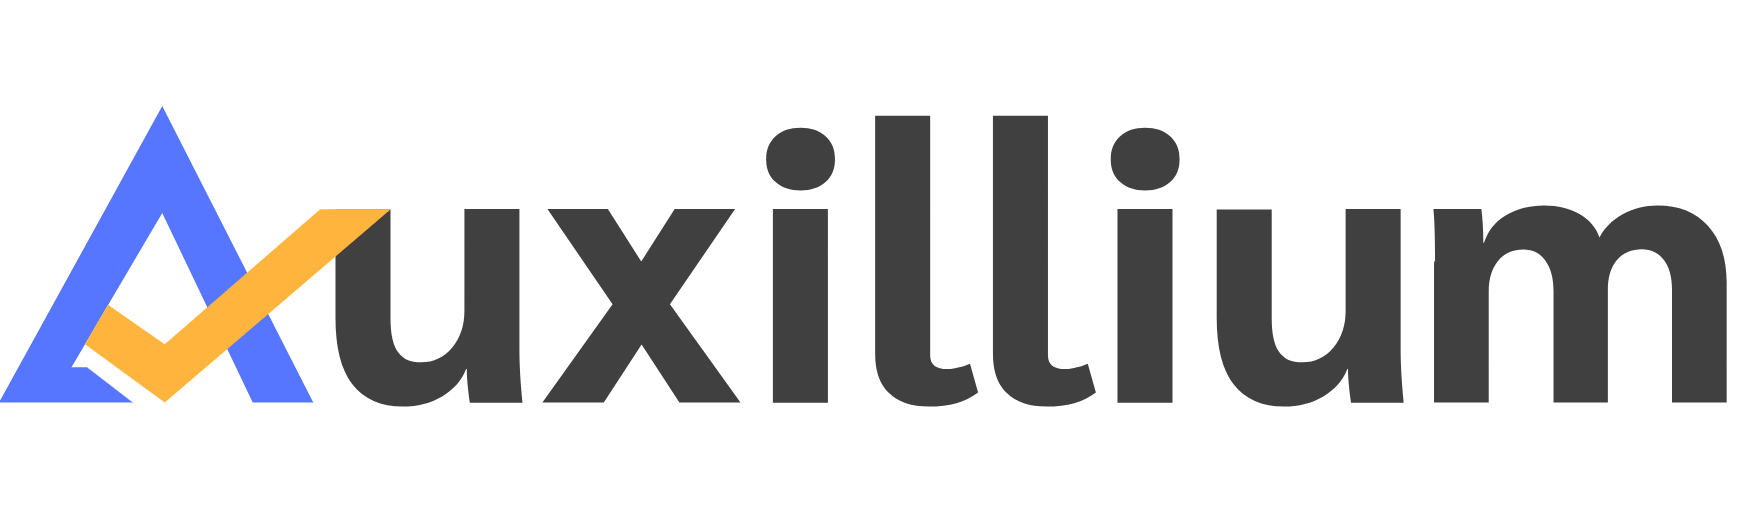 AUXILLIUM logo